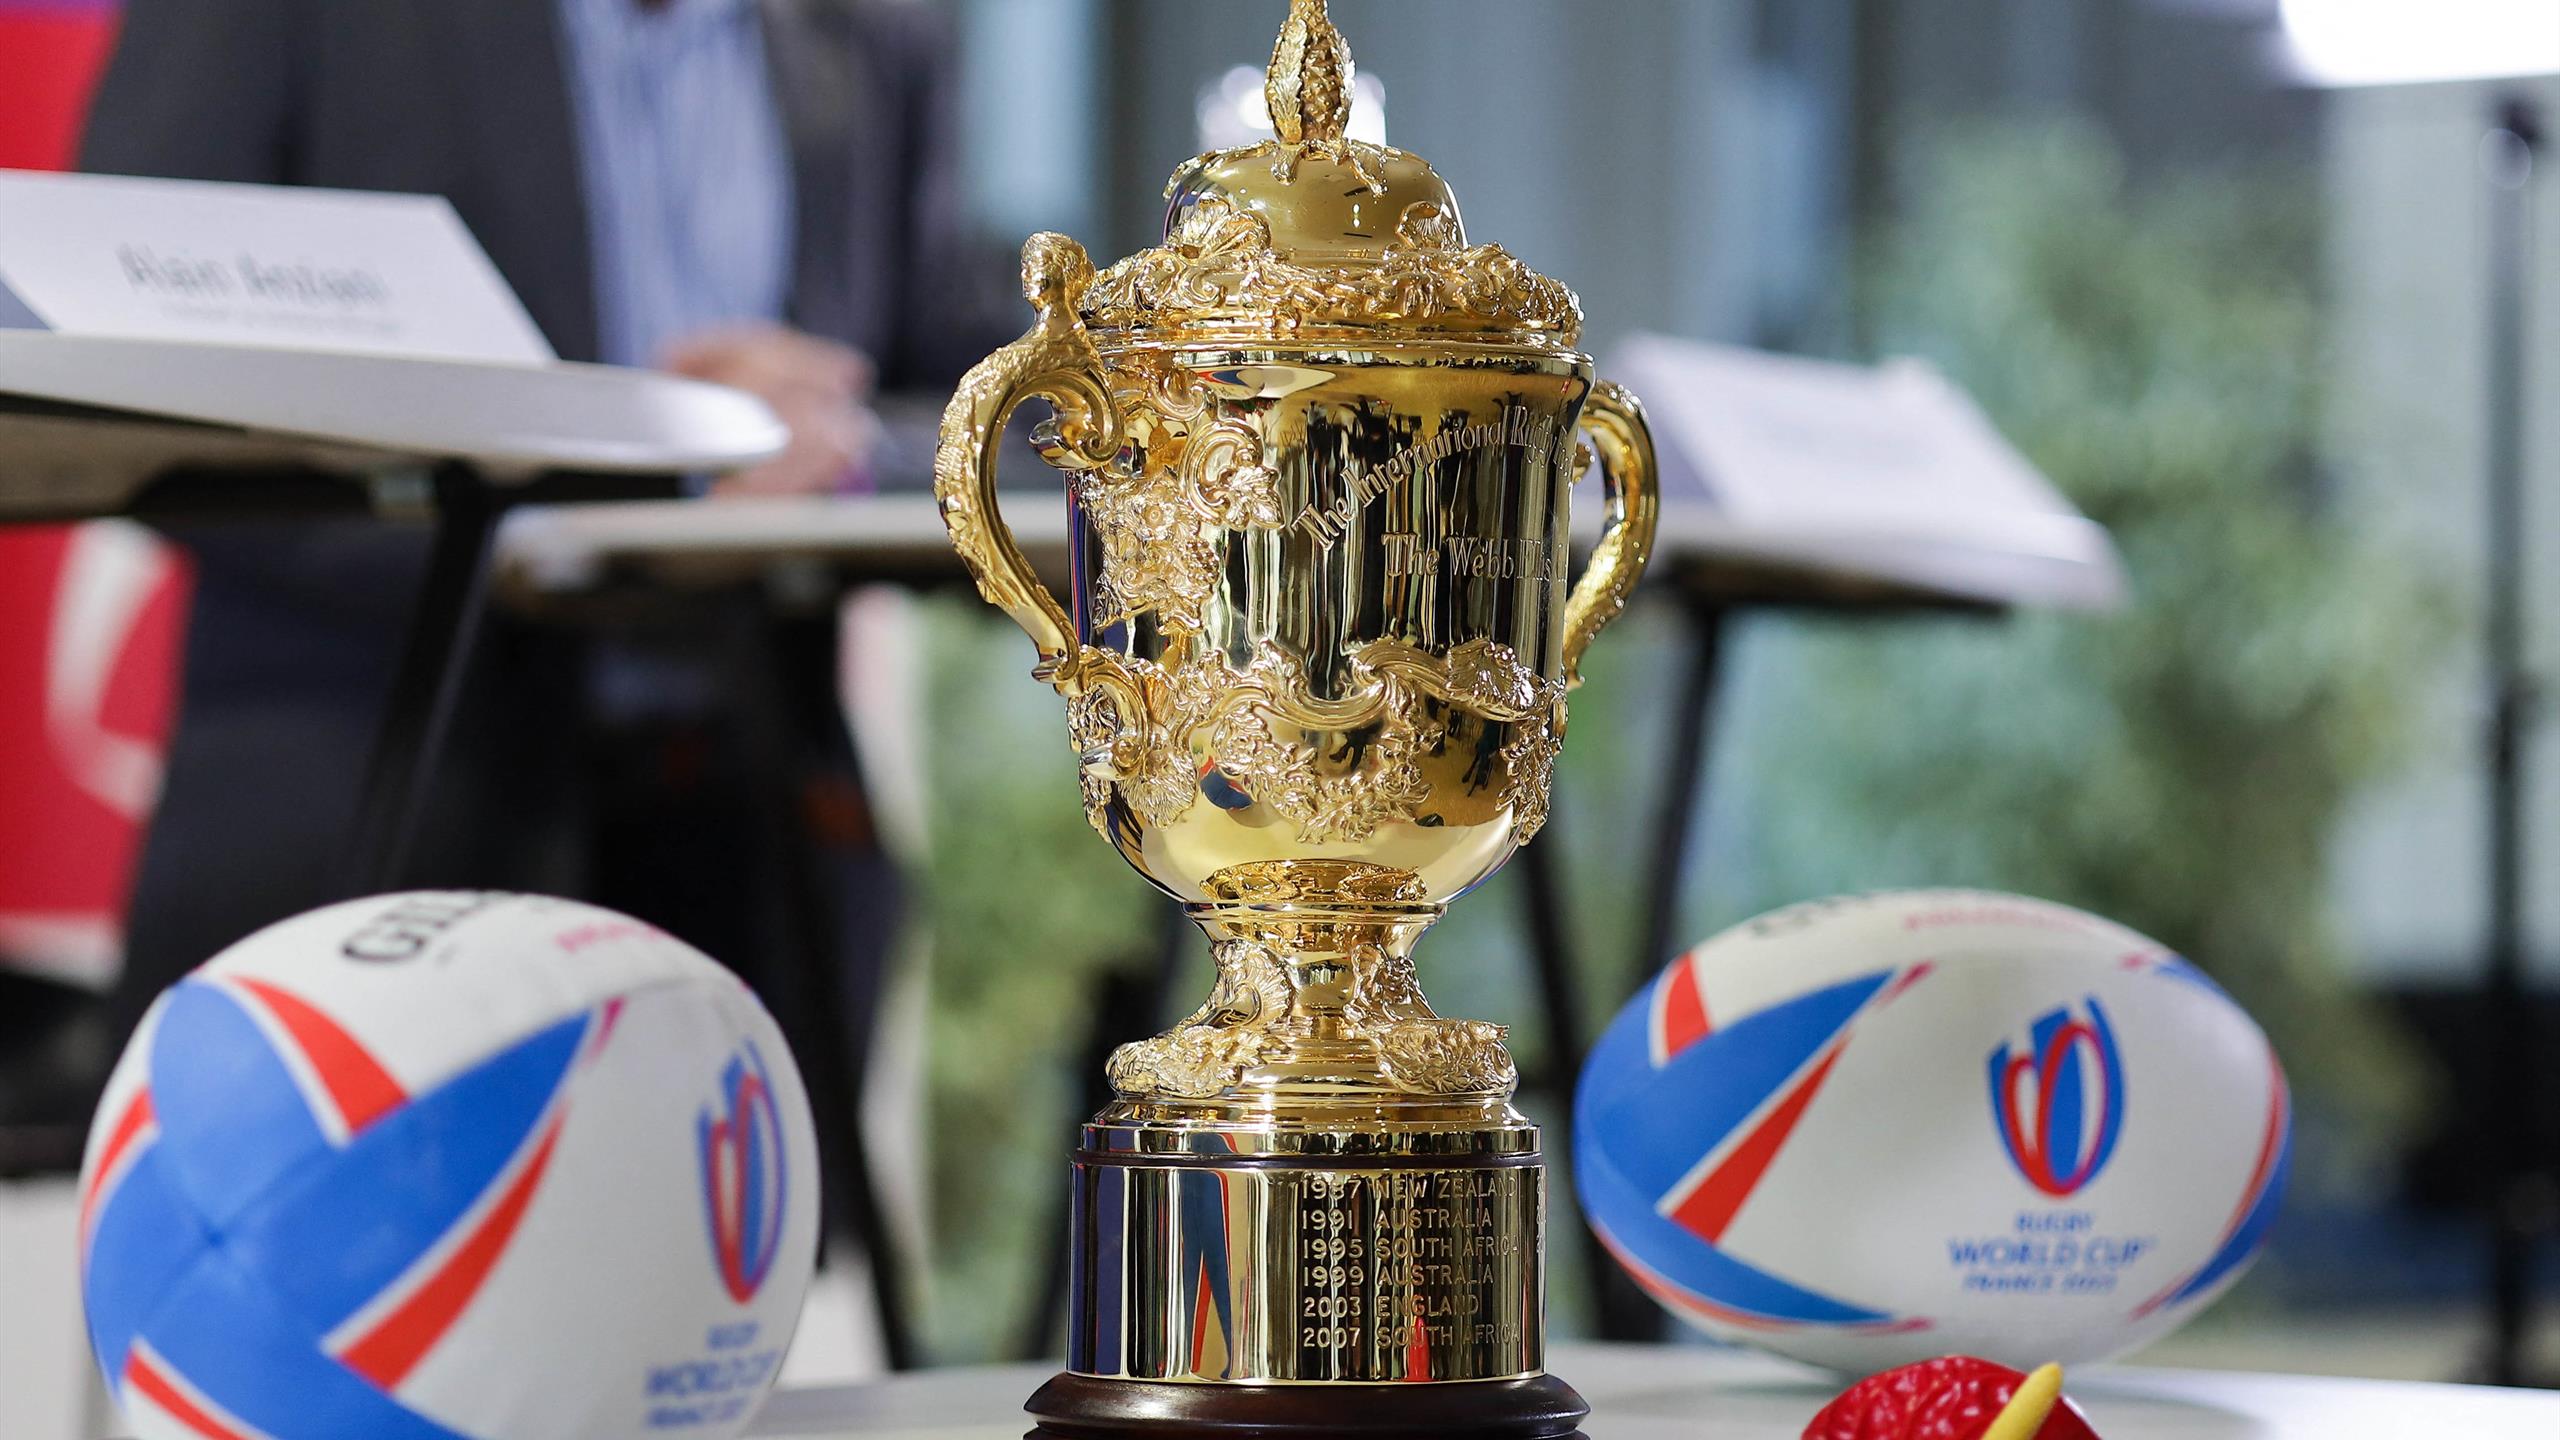 Présentation du programme d’accompagnement par l’Etat de la Coupe du Monde de rugby 2023